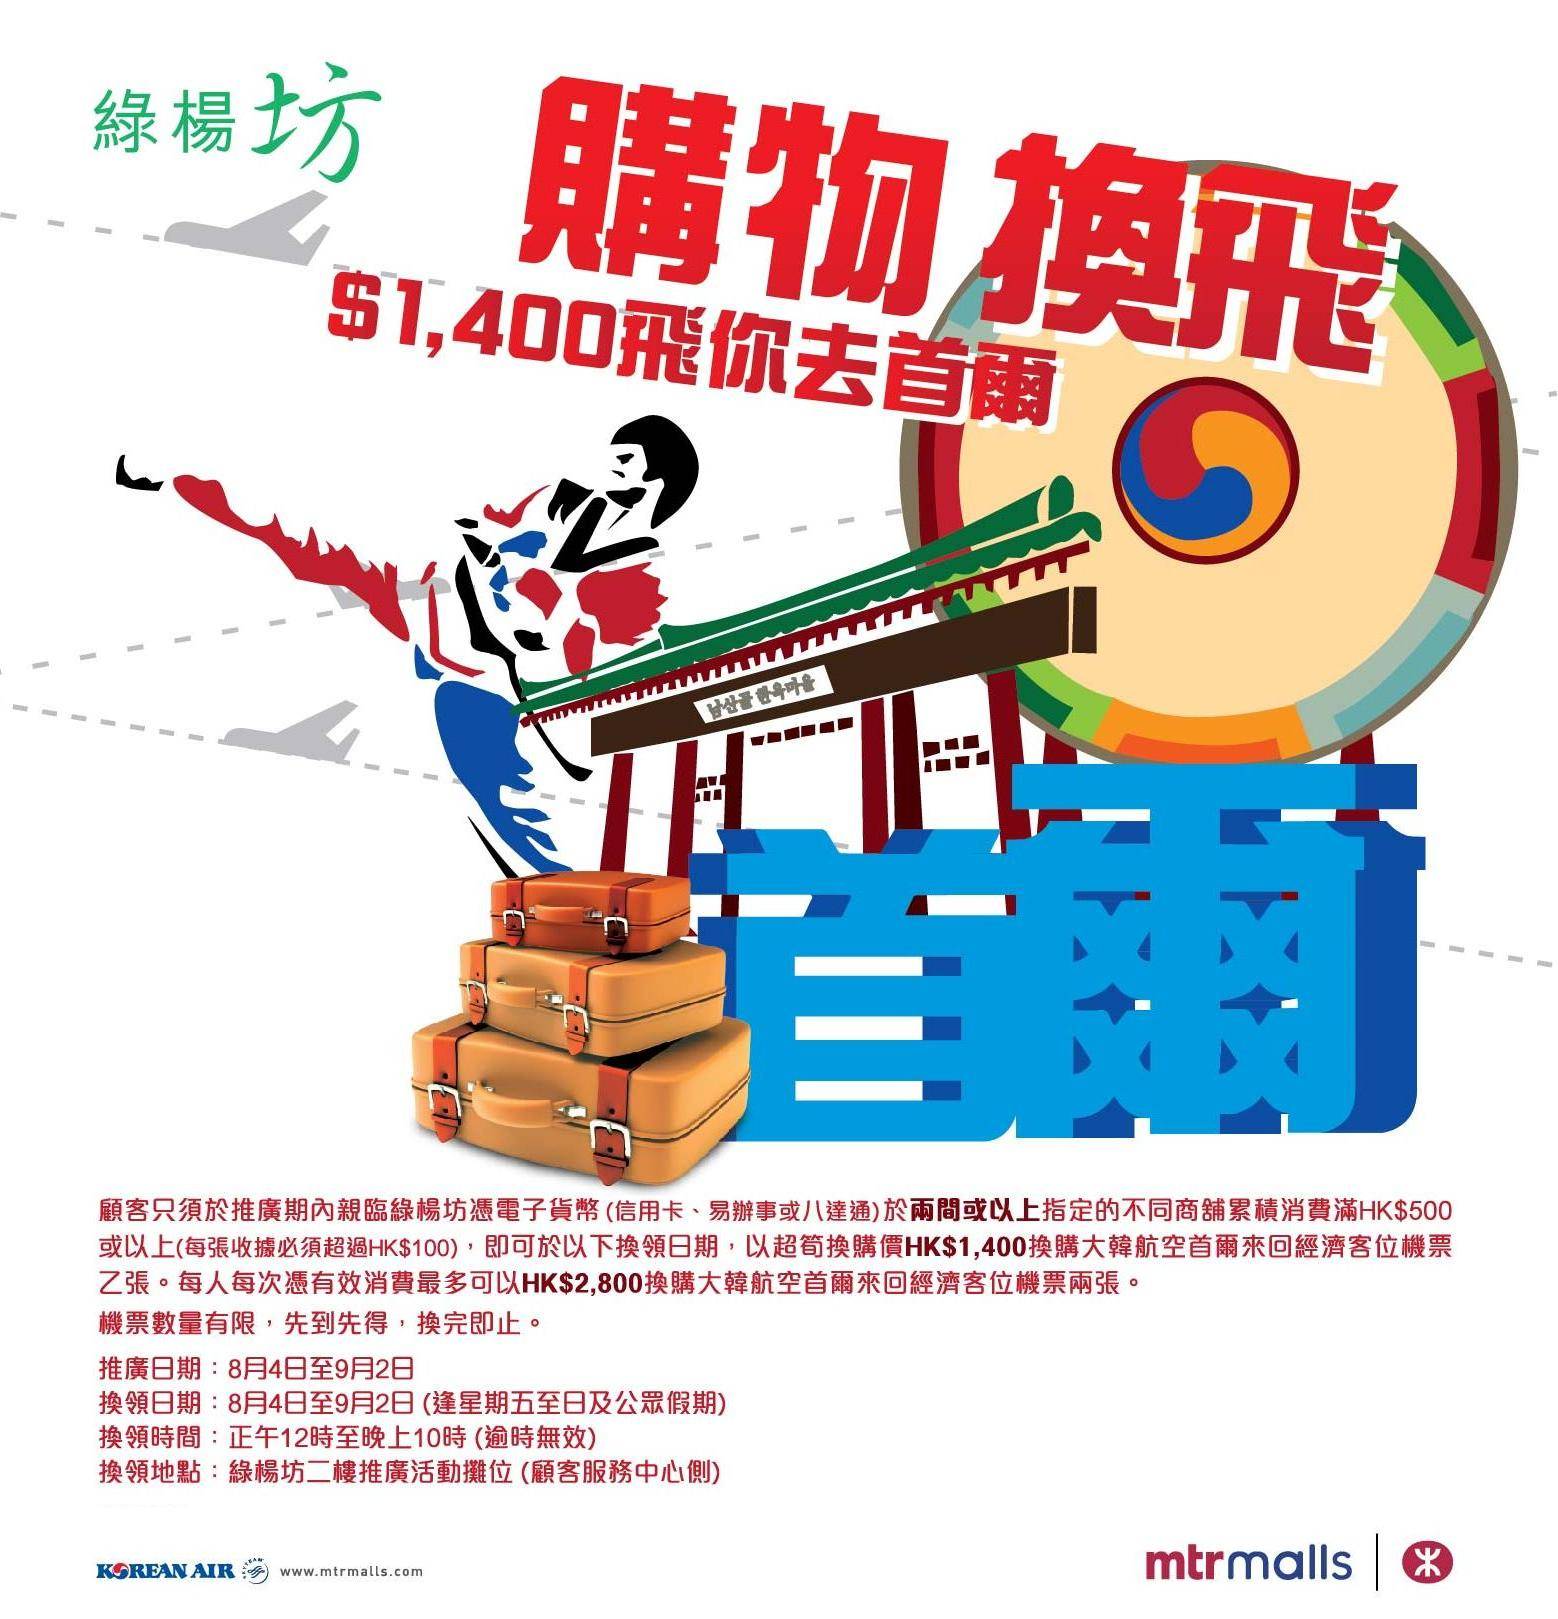 綠楊坊購物滿0享超筍價,400換購首爾來回經濟客位機票(至12年9月2日)圖片1